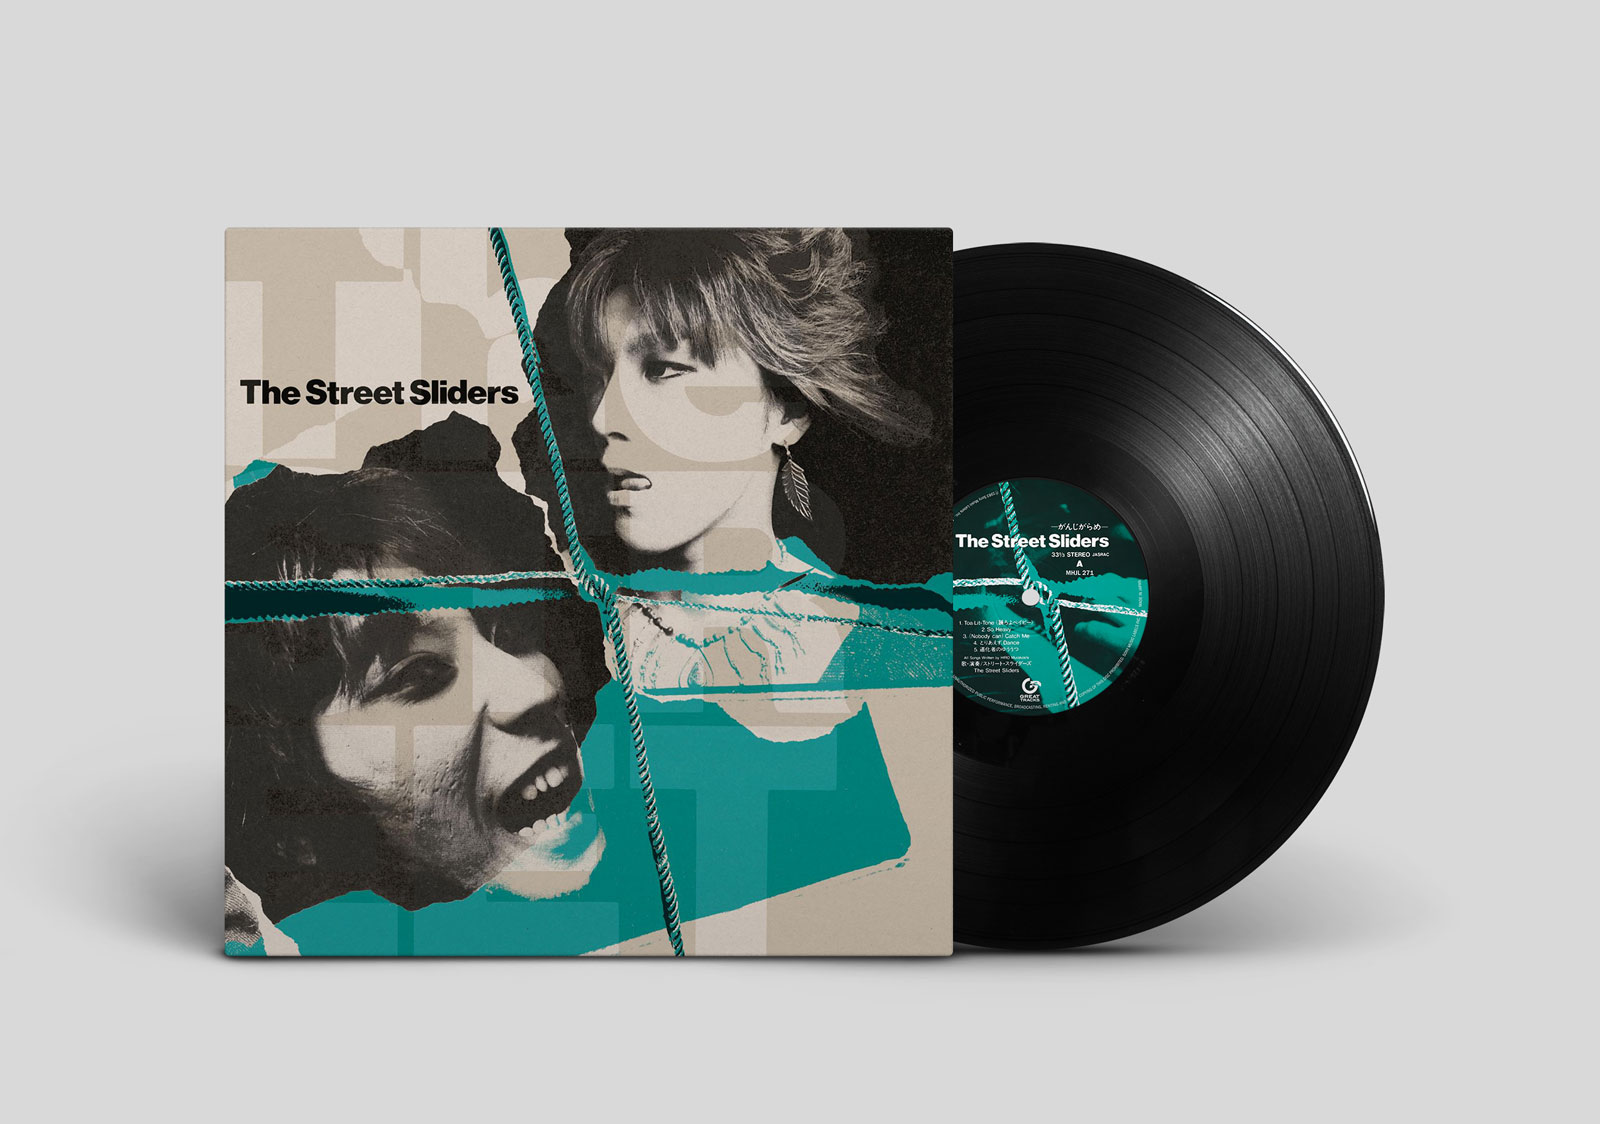 The Street Slidersデビュー40周年プロジェクト、第5弾!!

今年の3月から始まった"The Street Sliders"デビュー40周年記念プロジェクト、第5弾!! 記念すべきデビュー1stアルバム『Slider Joint』〜7thアルバム『SCREW DRIVER』を最新リマスタリングを施し、 新たにアナログ盤として3カ月連続でリリース!! ※2nd Album『がんじがらめ』オリジナル盤発売日：1983年12月1日